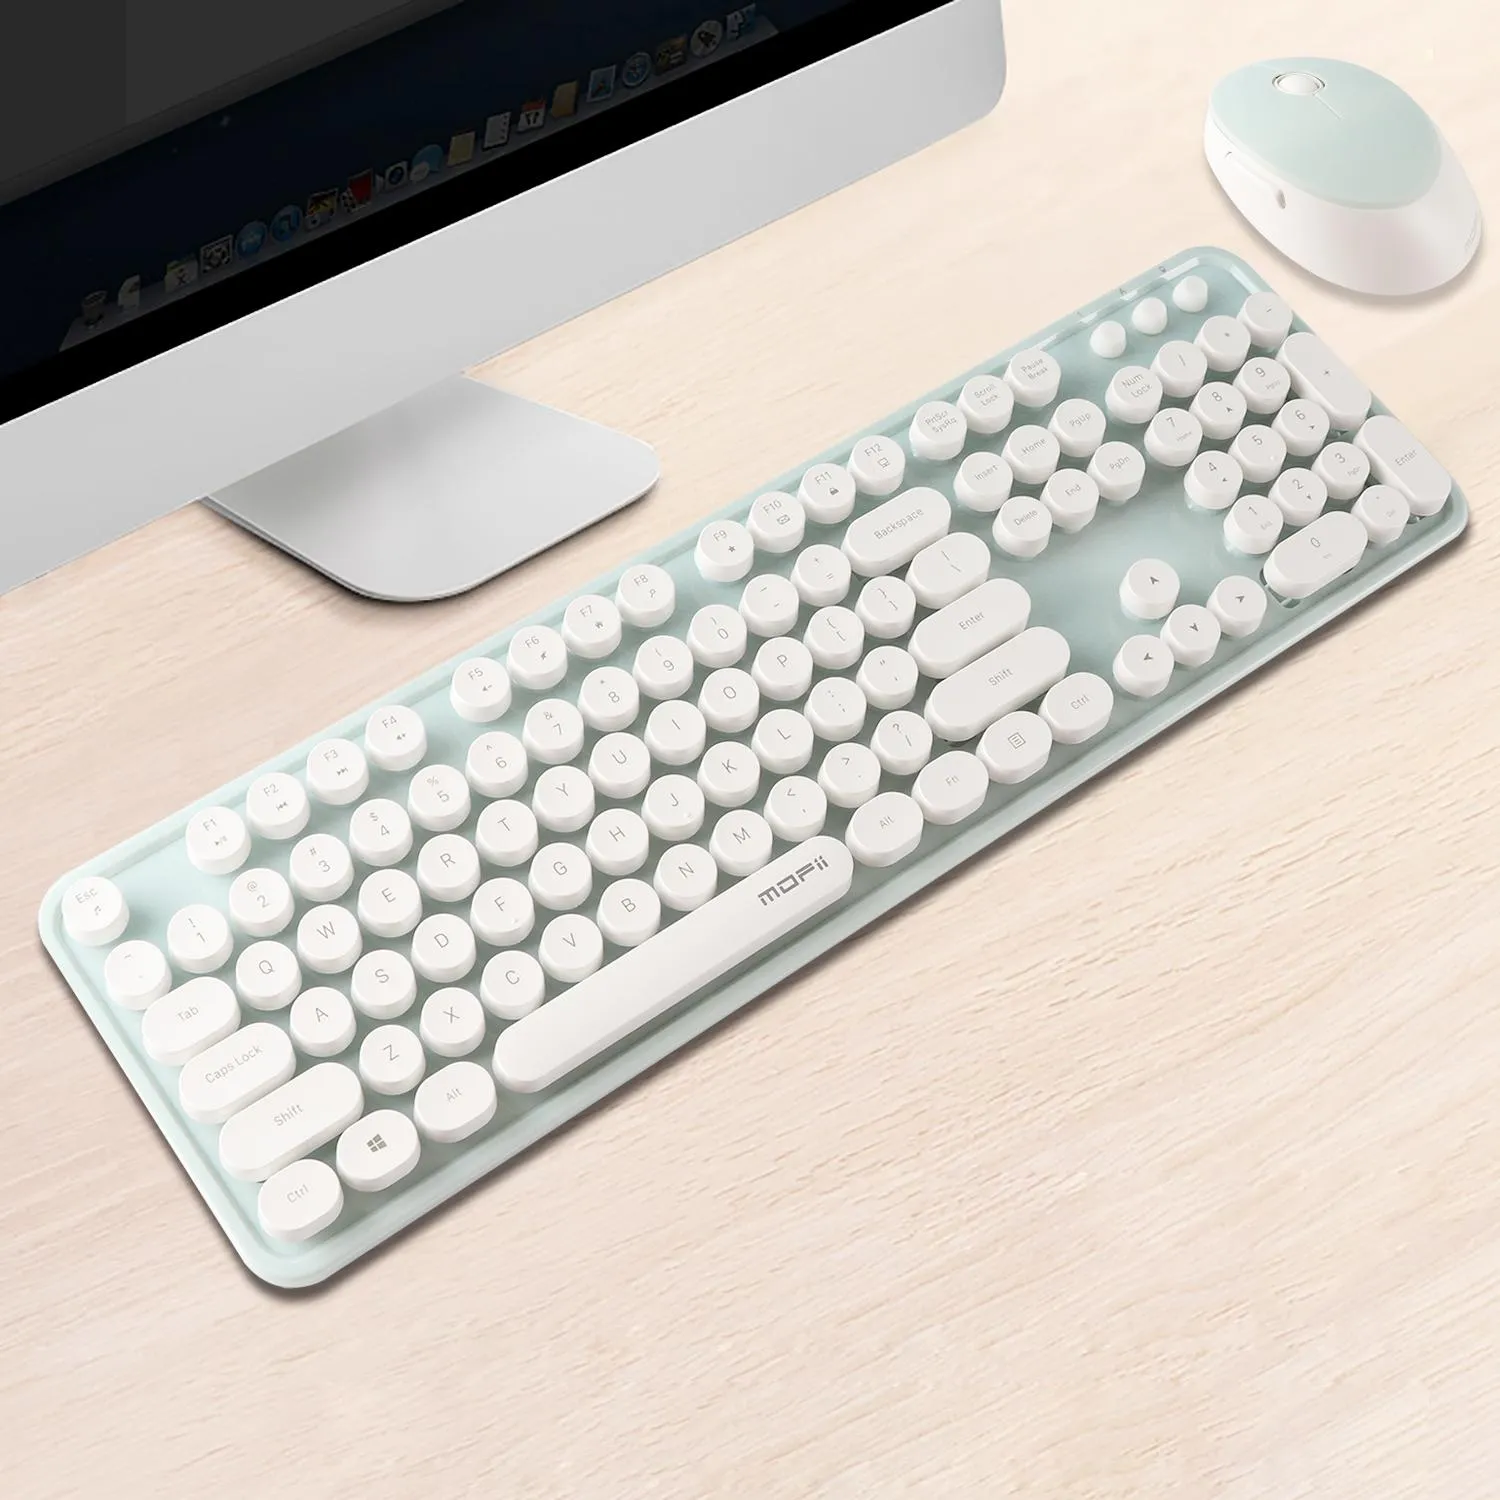 Combos Новая беспроводная клавиатура и мыши Combos 2,4G Эргономичная клавишная набор мышей USB 104 Keys Offic